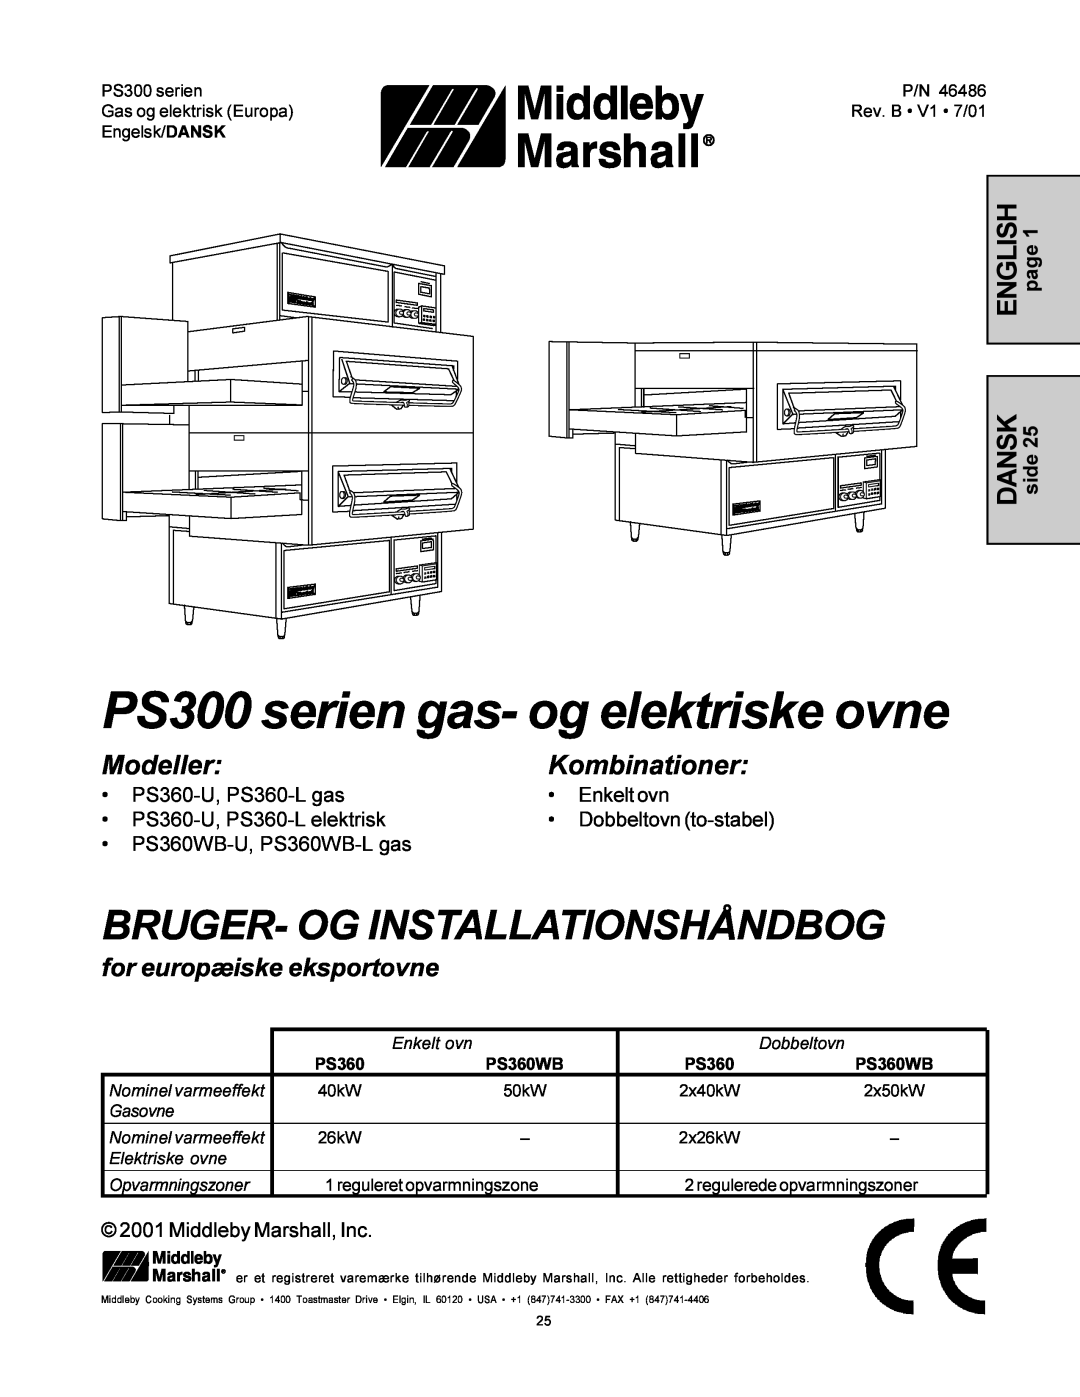 Middleby Marshall PS360-L PS300 serien gas- og elektriske ovne, Bruger- Og Installationshåndbog, ModellerKombinationer 